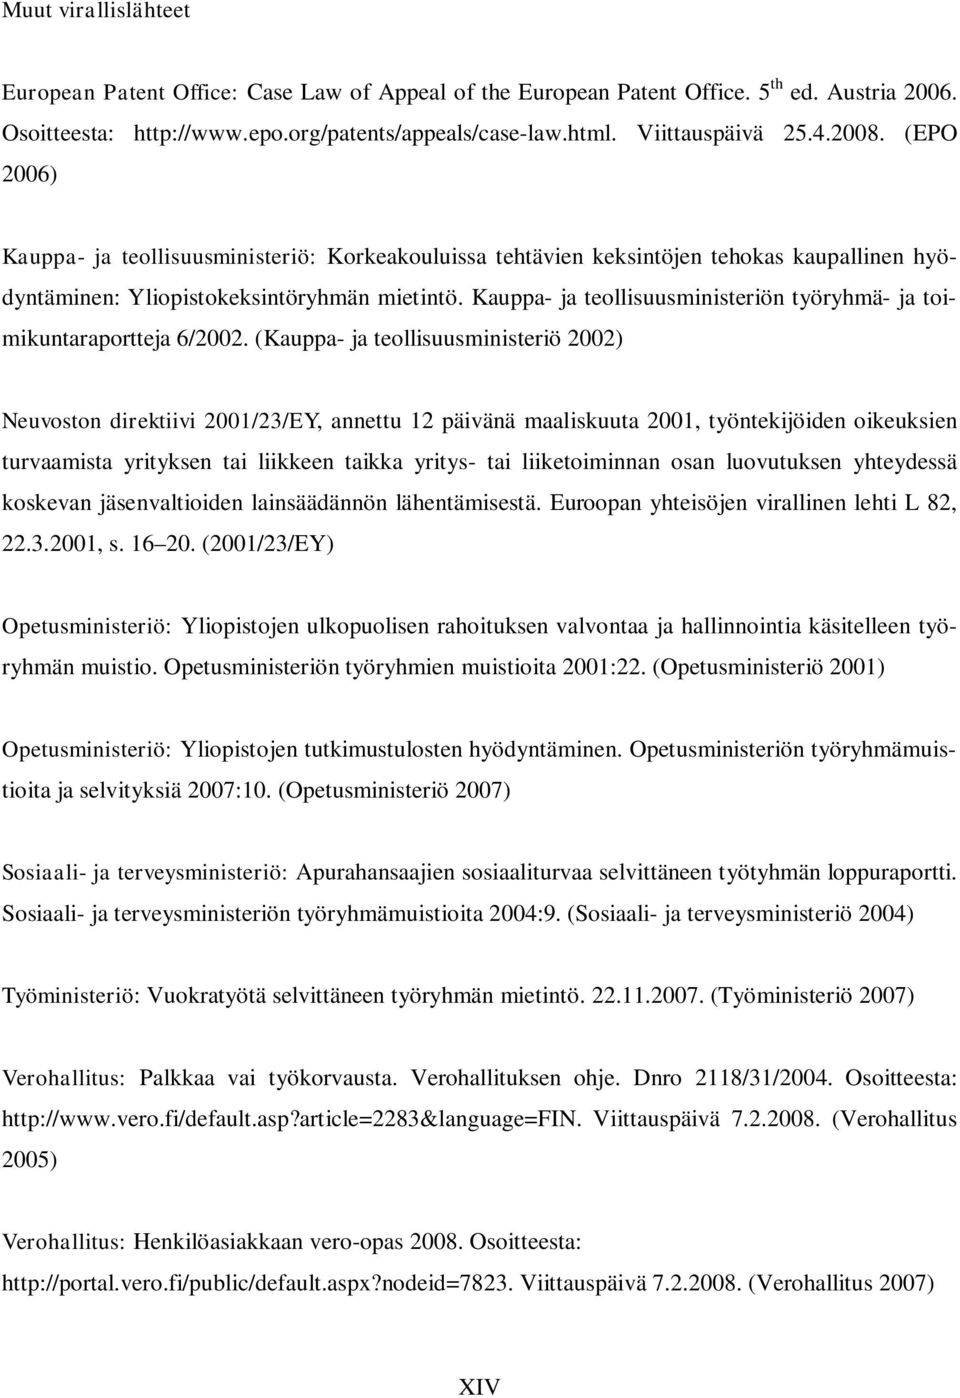 Kauppa- ja teollisuusministeriön työryhmä- ja toimikuntaraportteja 6/2002.